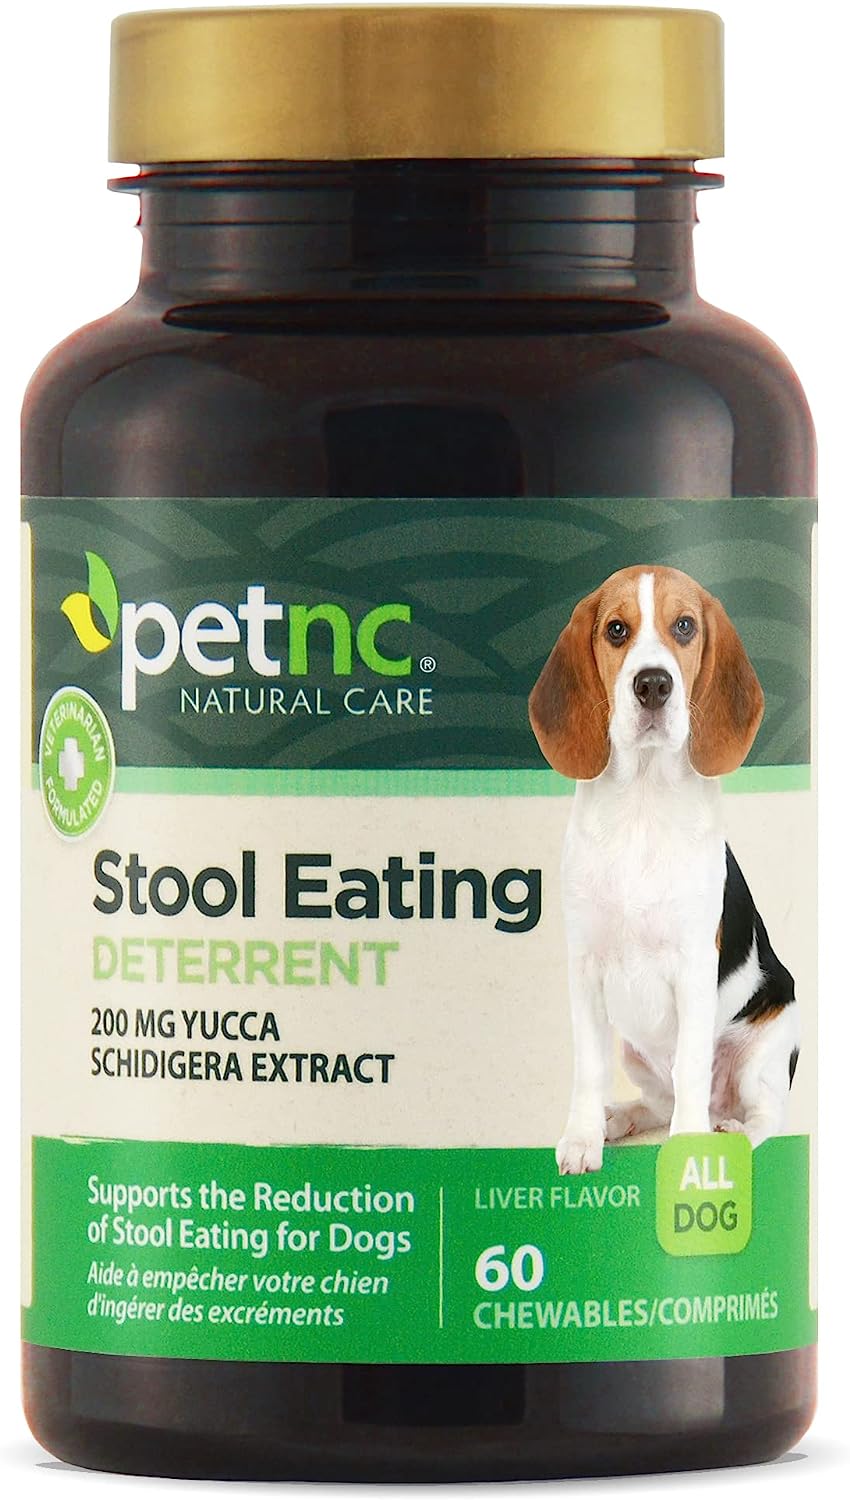 10. PetNC Natural Care Ontlasting Afschrikwekkende kauwtabletten voor honden eten